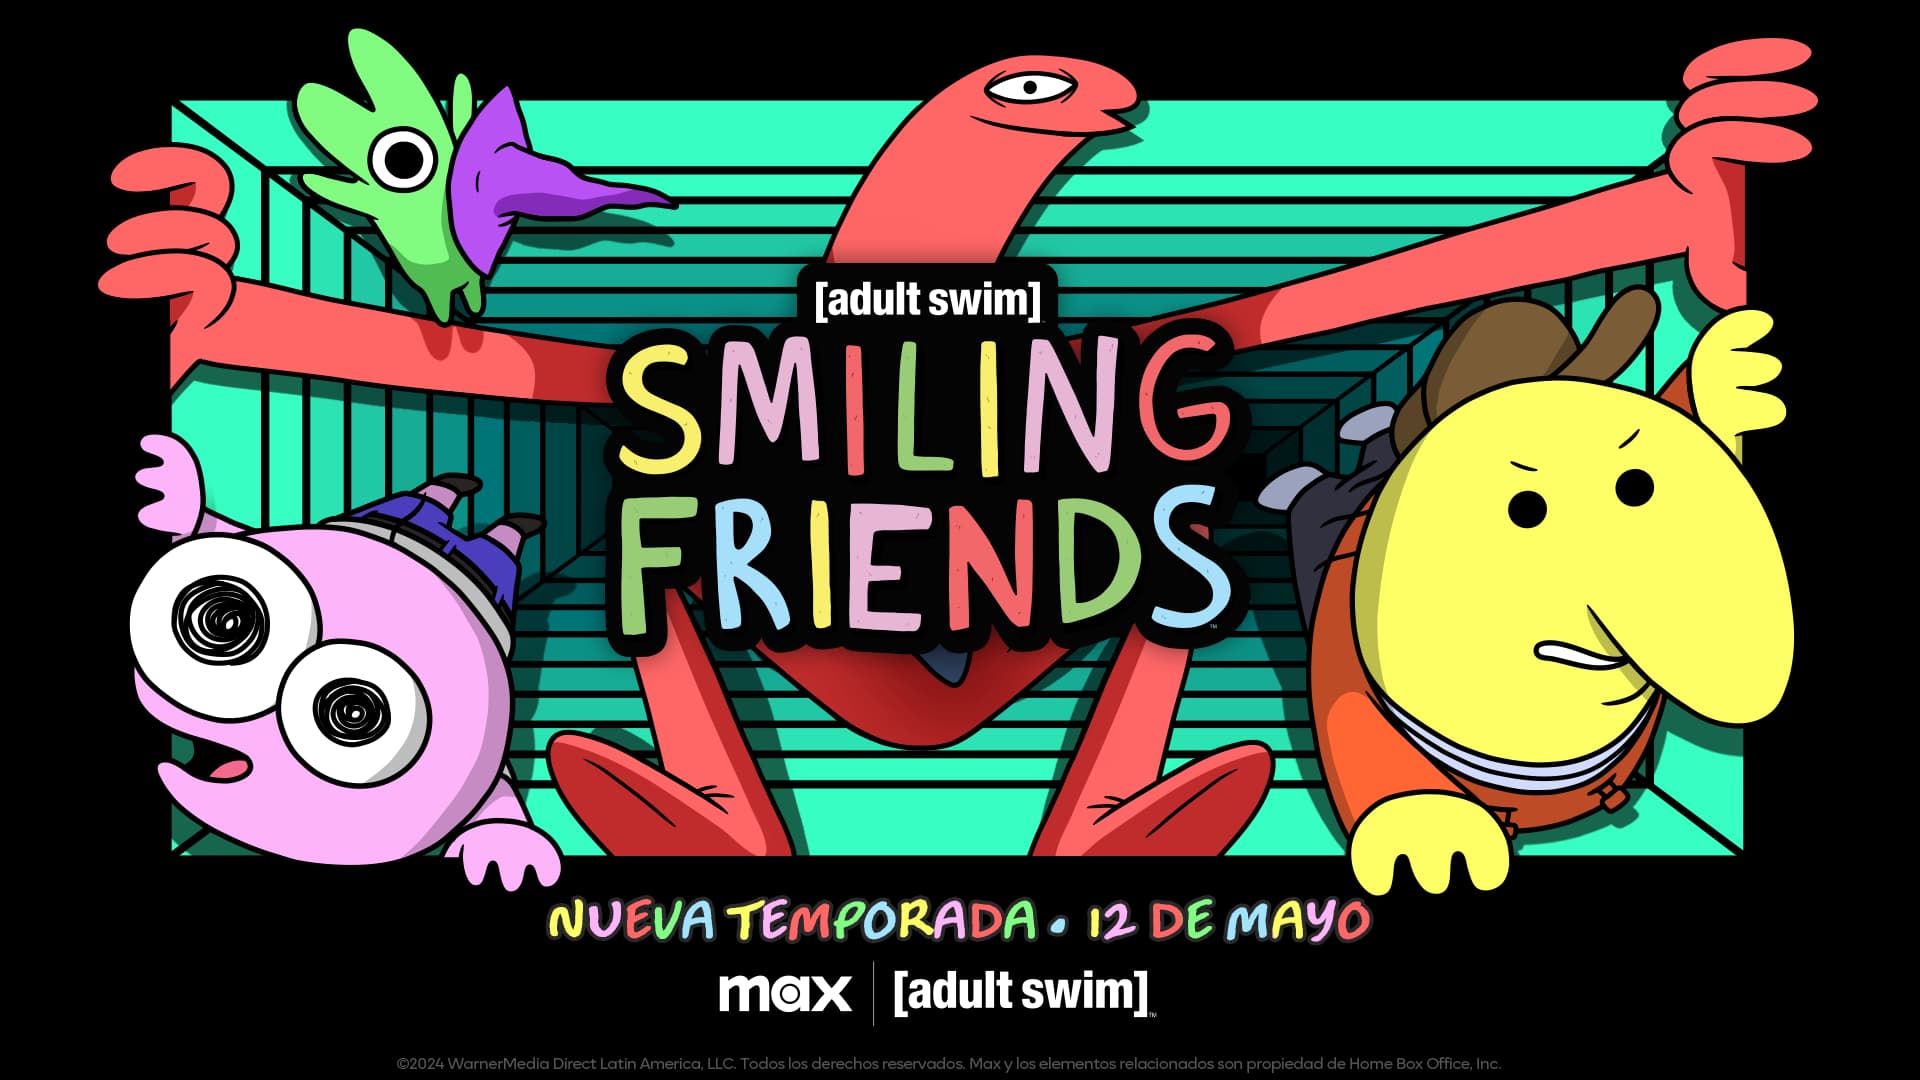 La segunda temporada de SMILING FRIENDS llega en Max y Adult Swim!